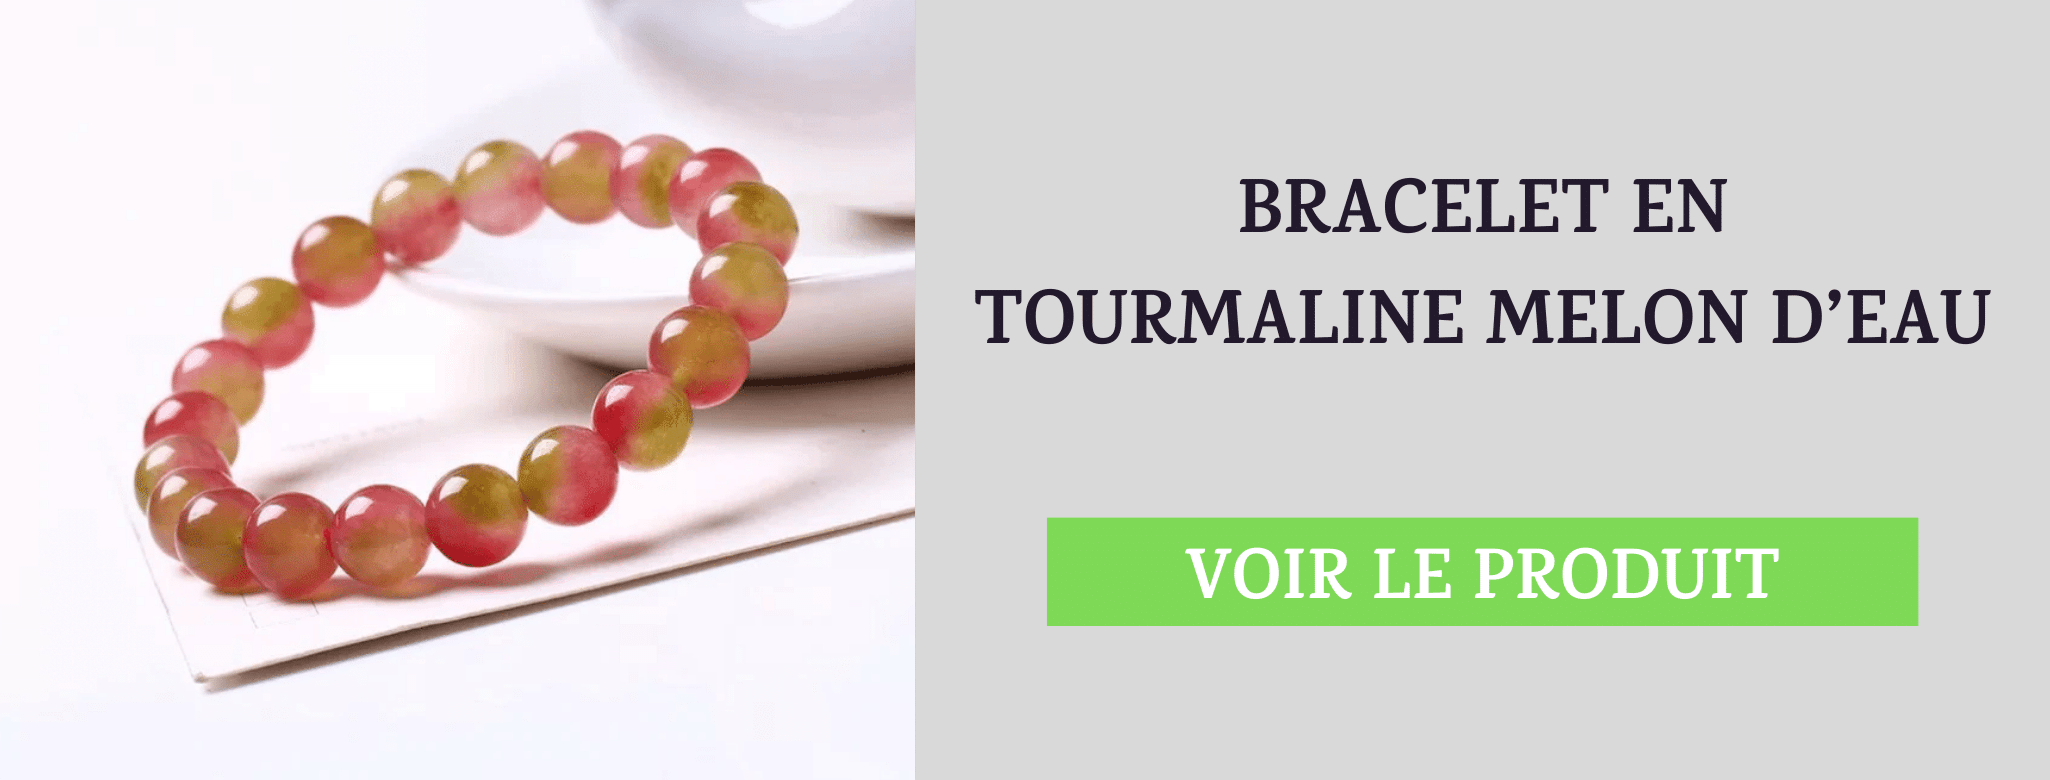 Bracelet Tourmaline Melon d'Eau Renouveau